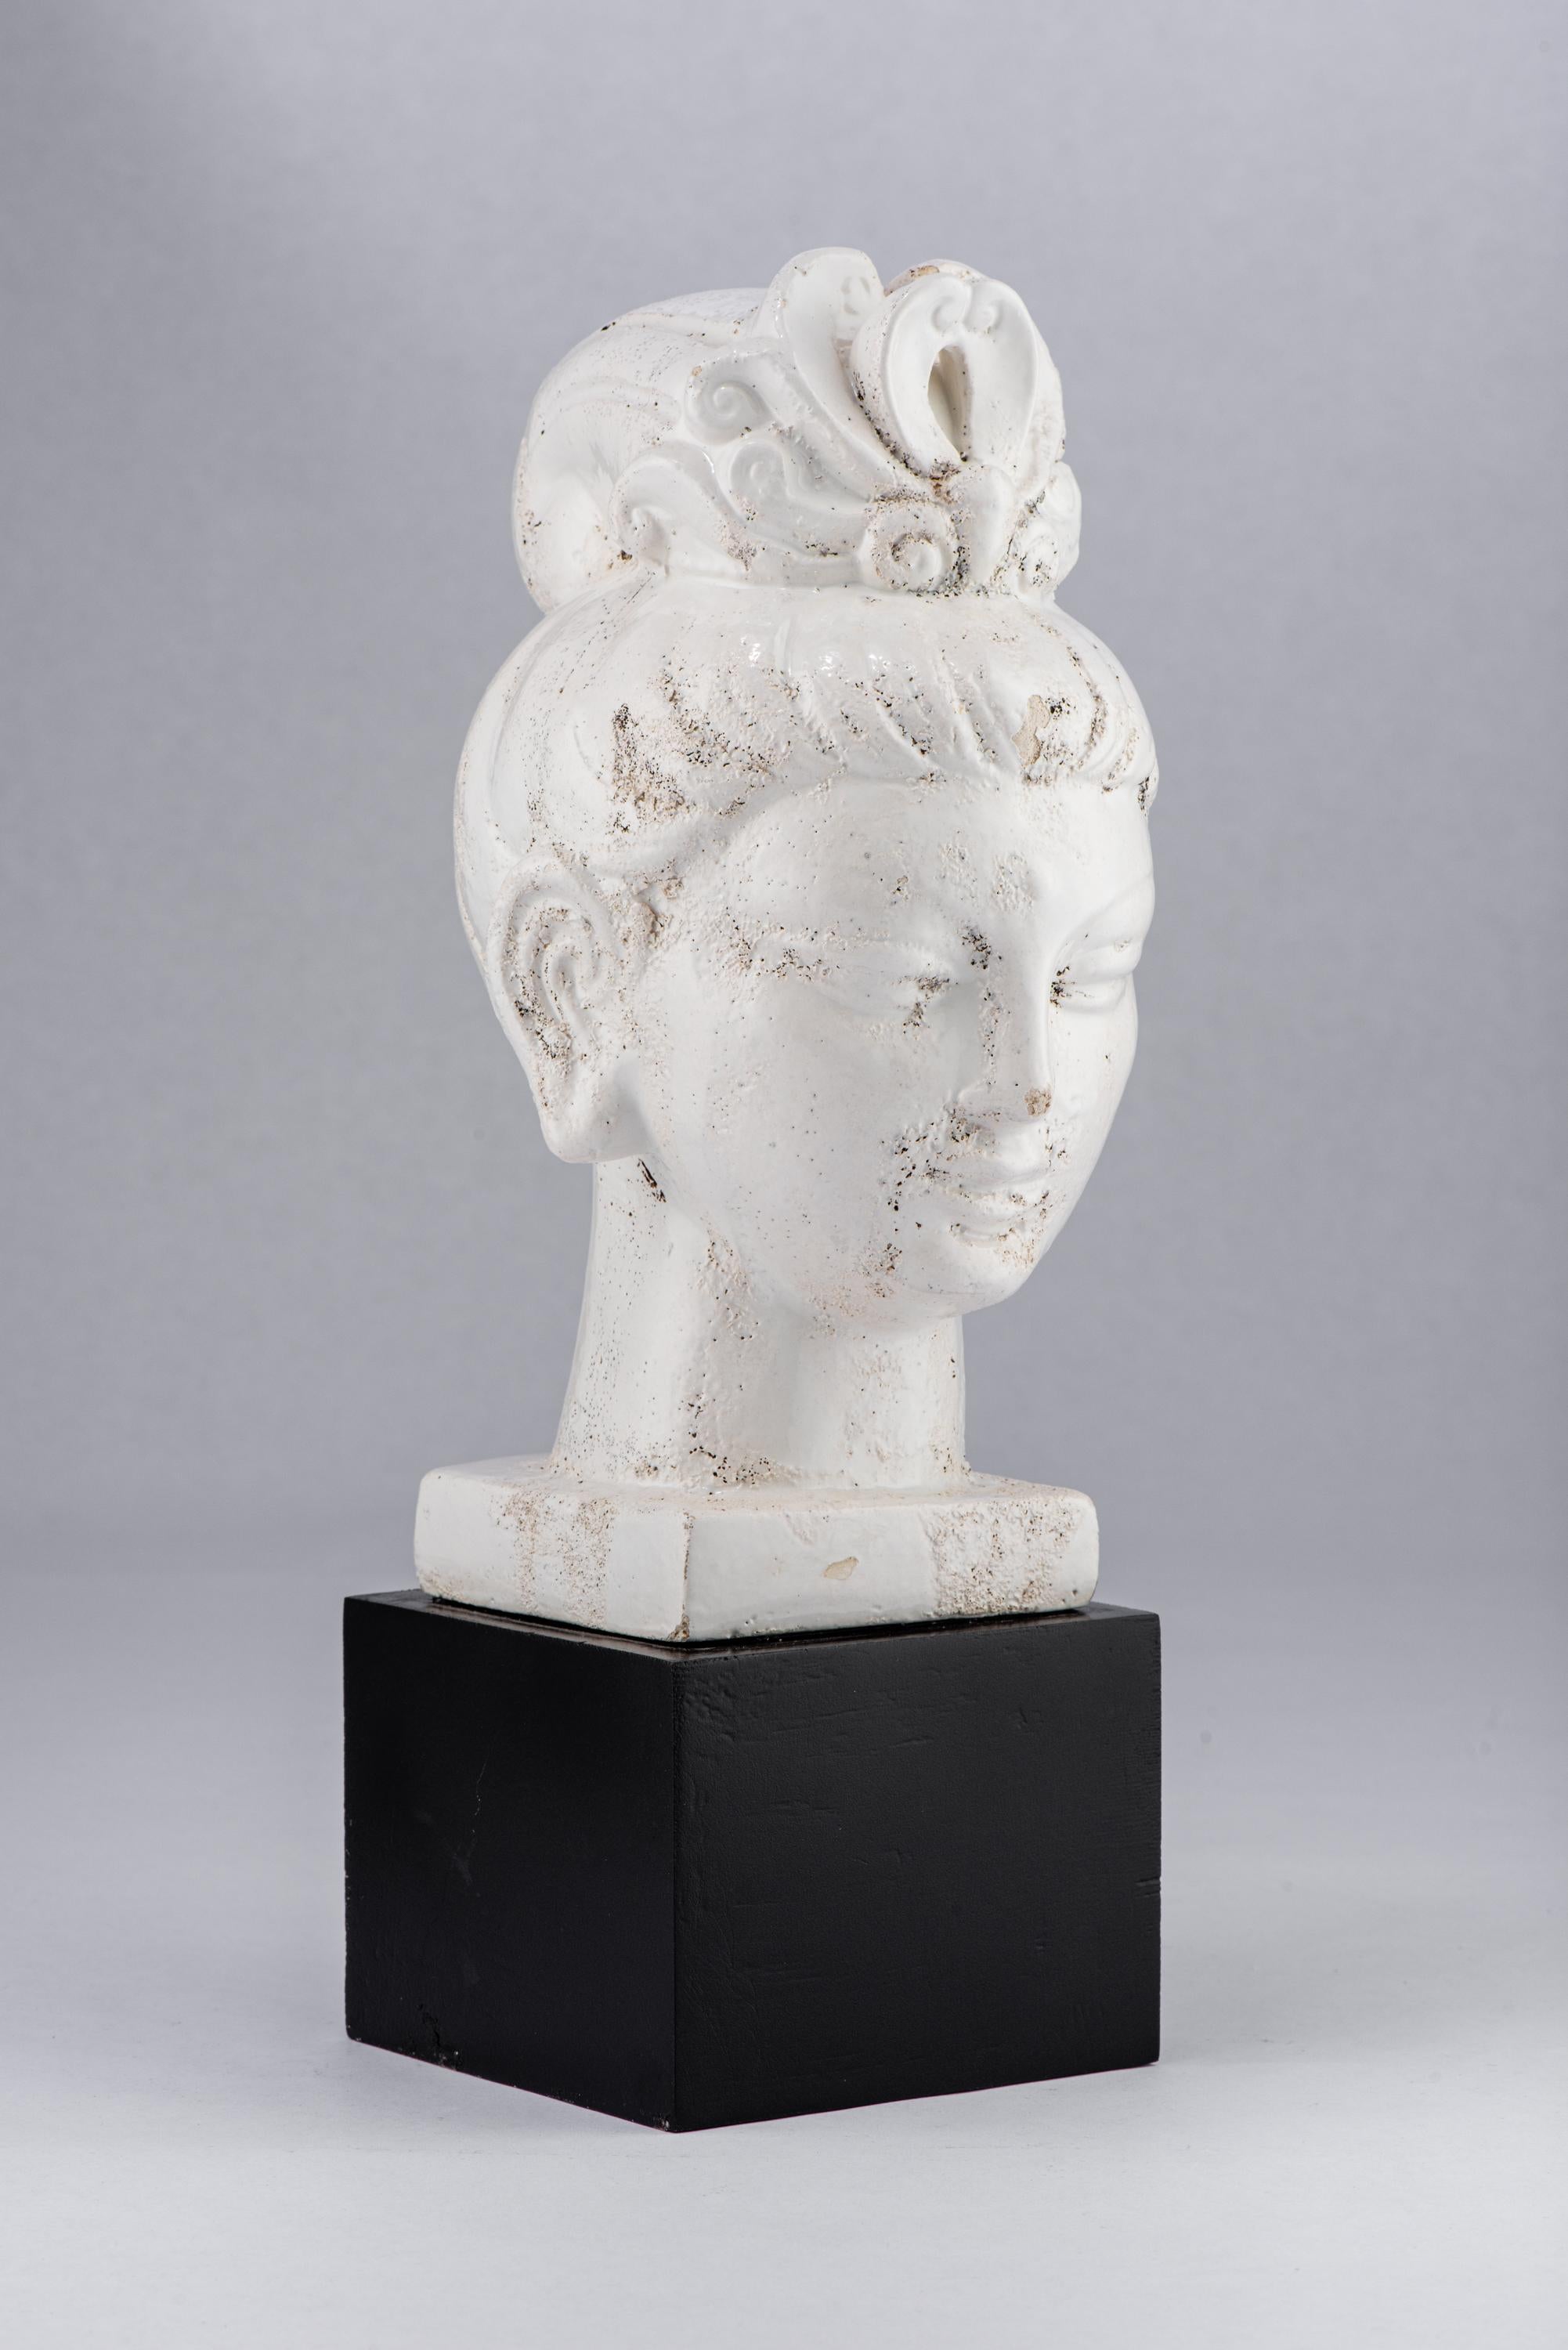 Bitossi Kwan Yin Buddha, ceramic, white, black. Medium scale Kwan Yin Buddha finish in a textured white 